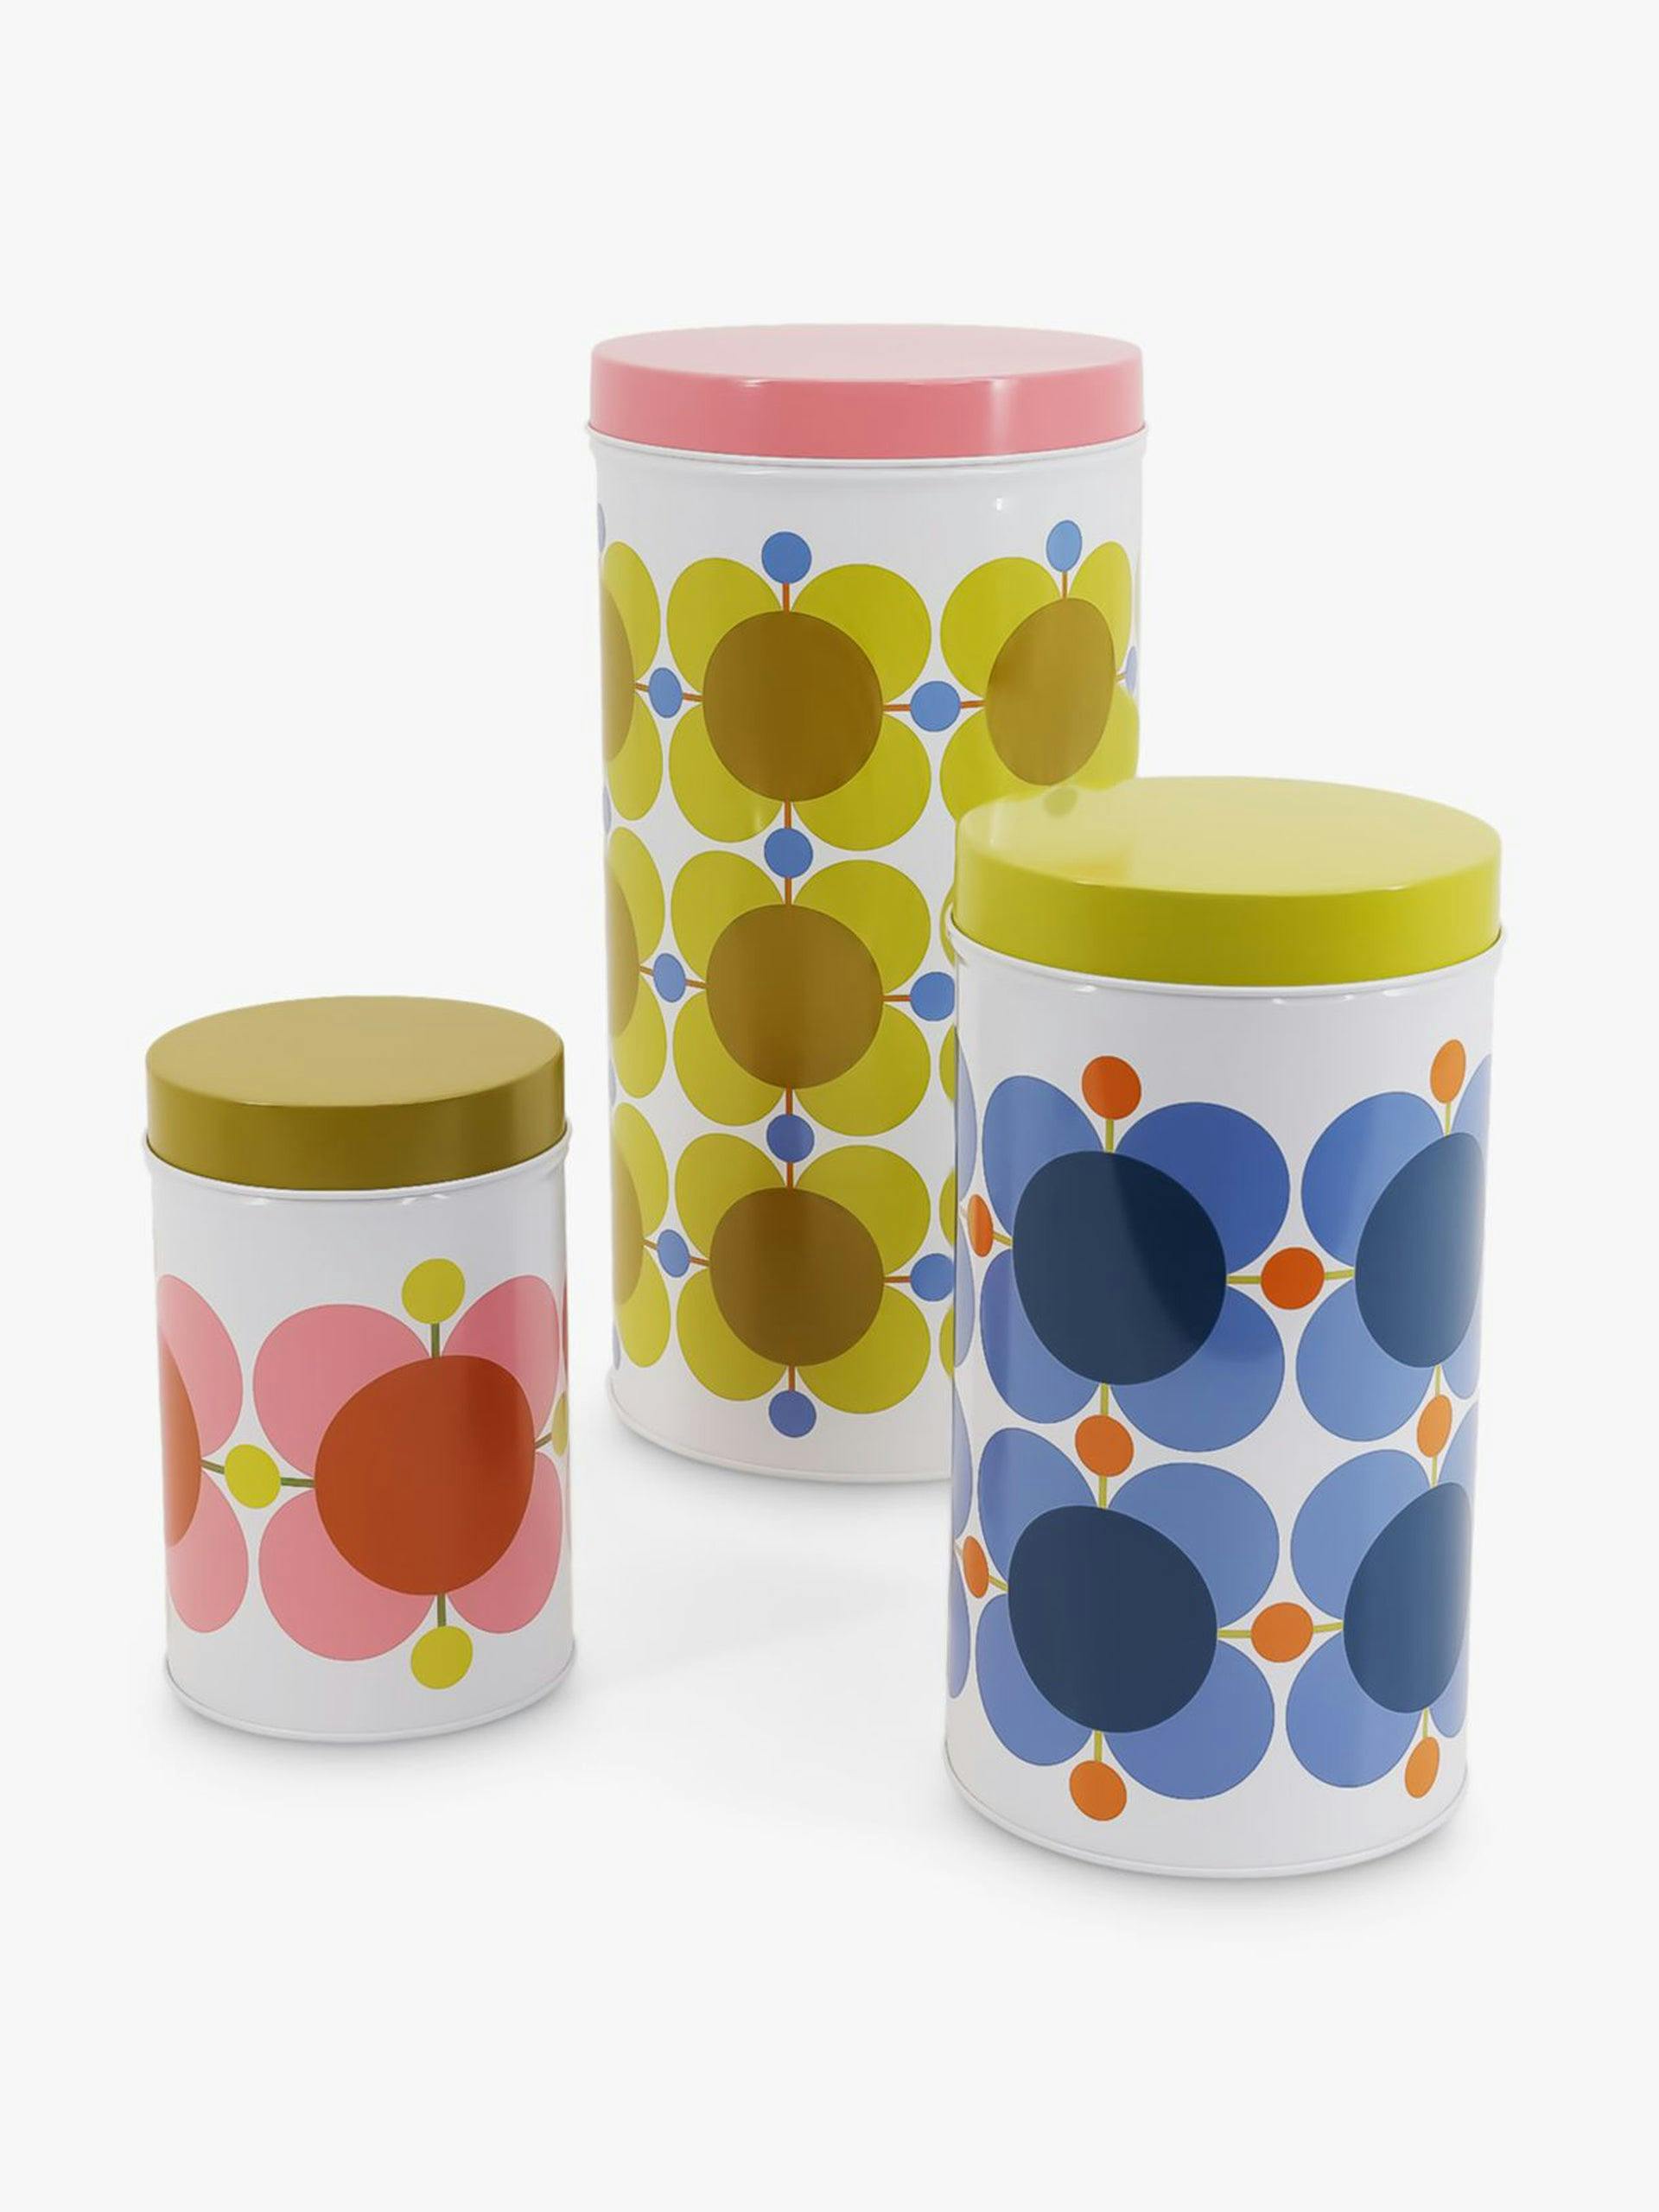 Flower print kitchen storage tins (set of 3)